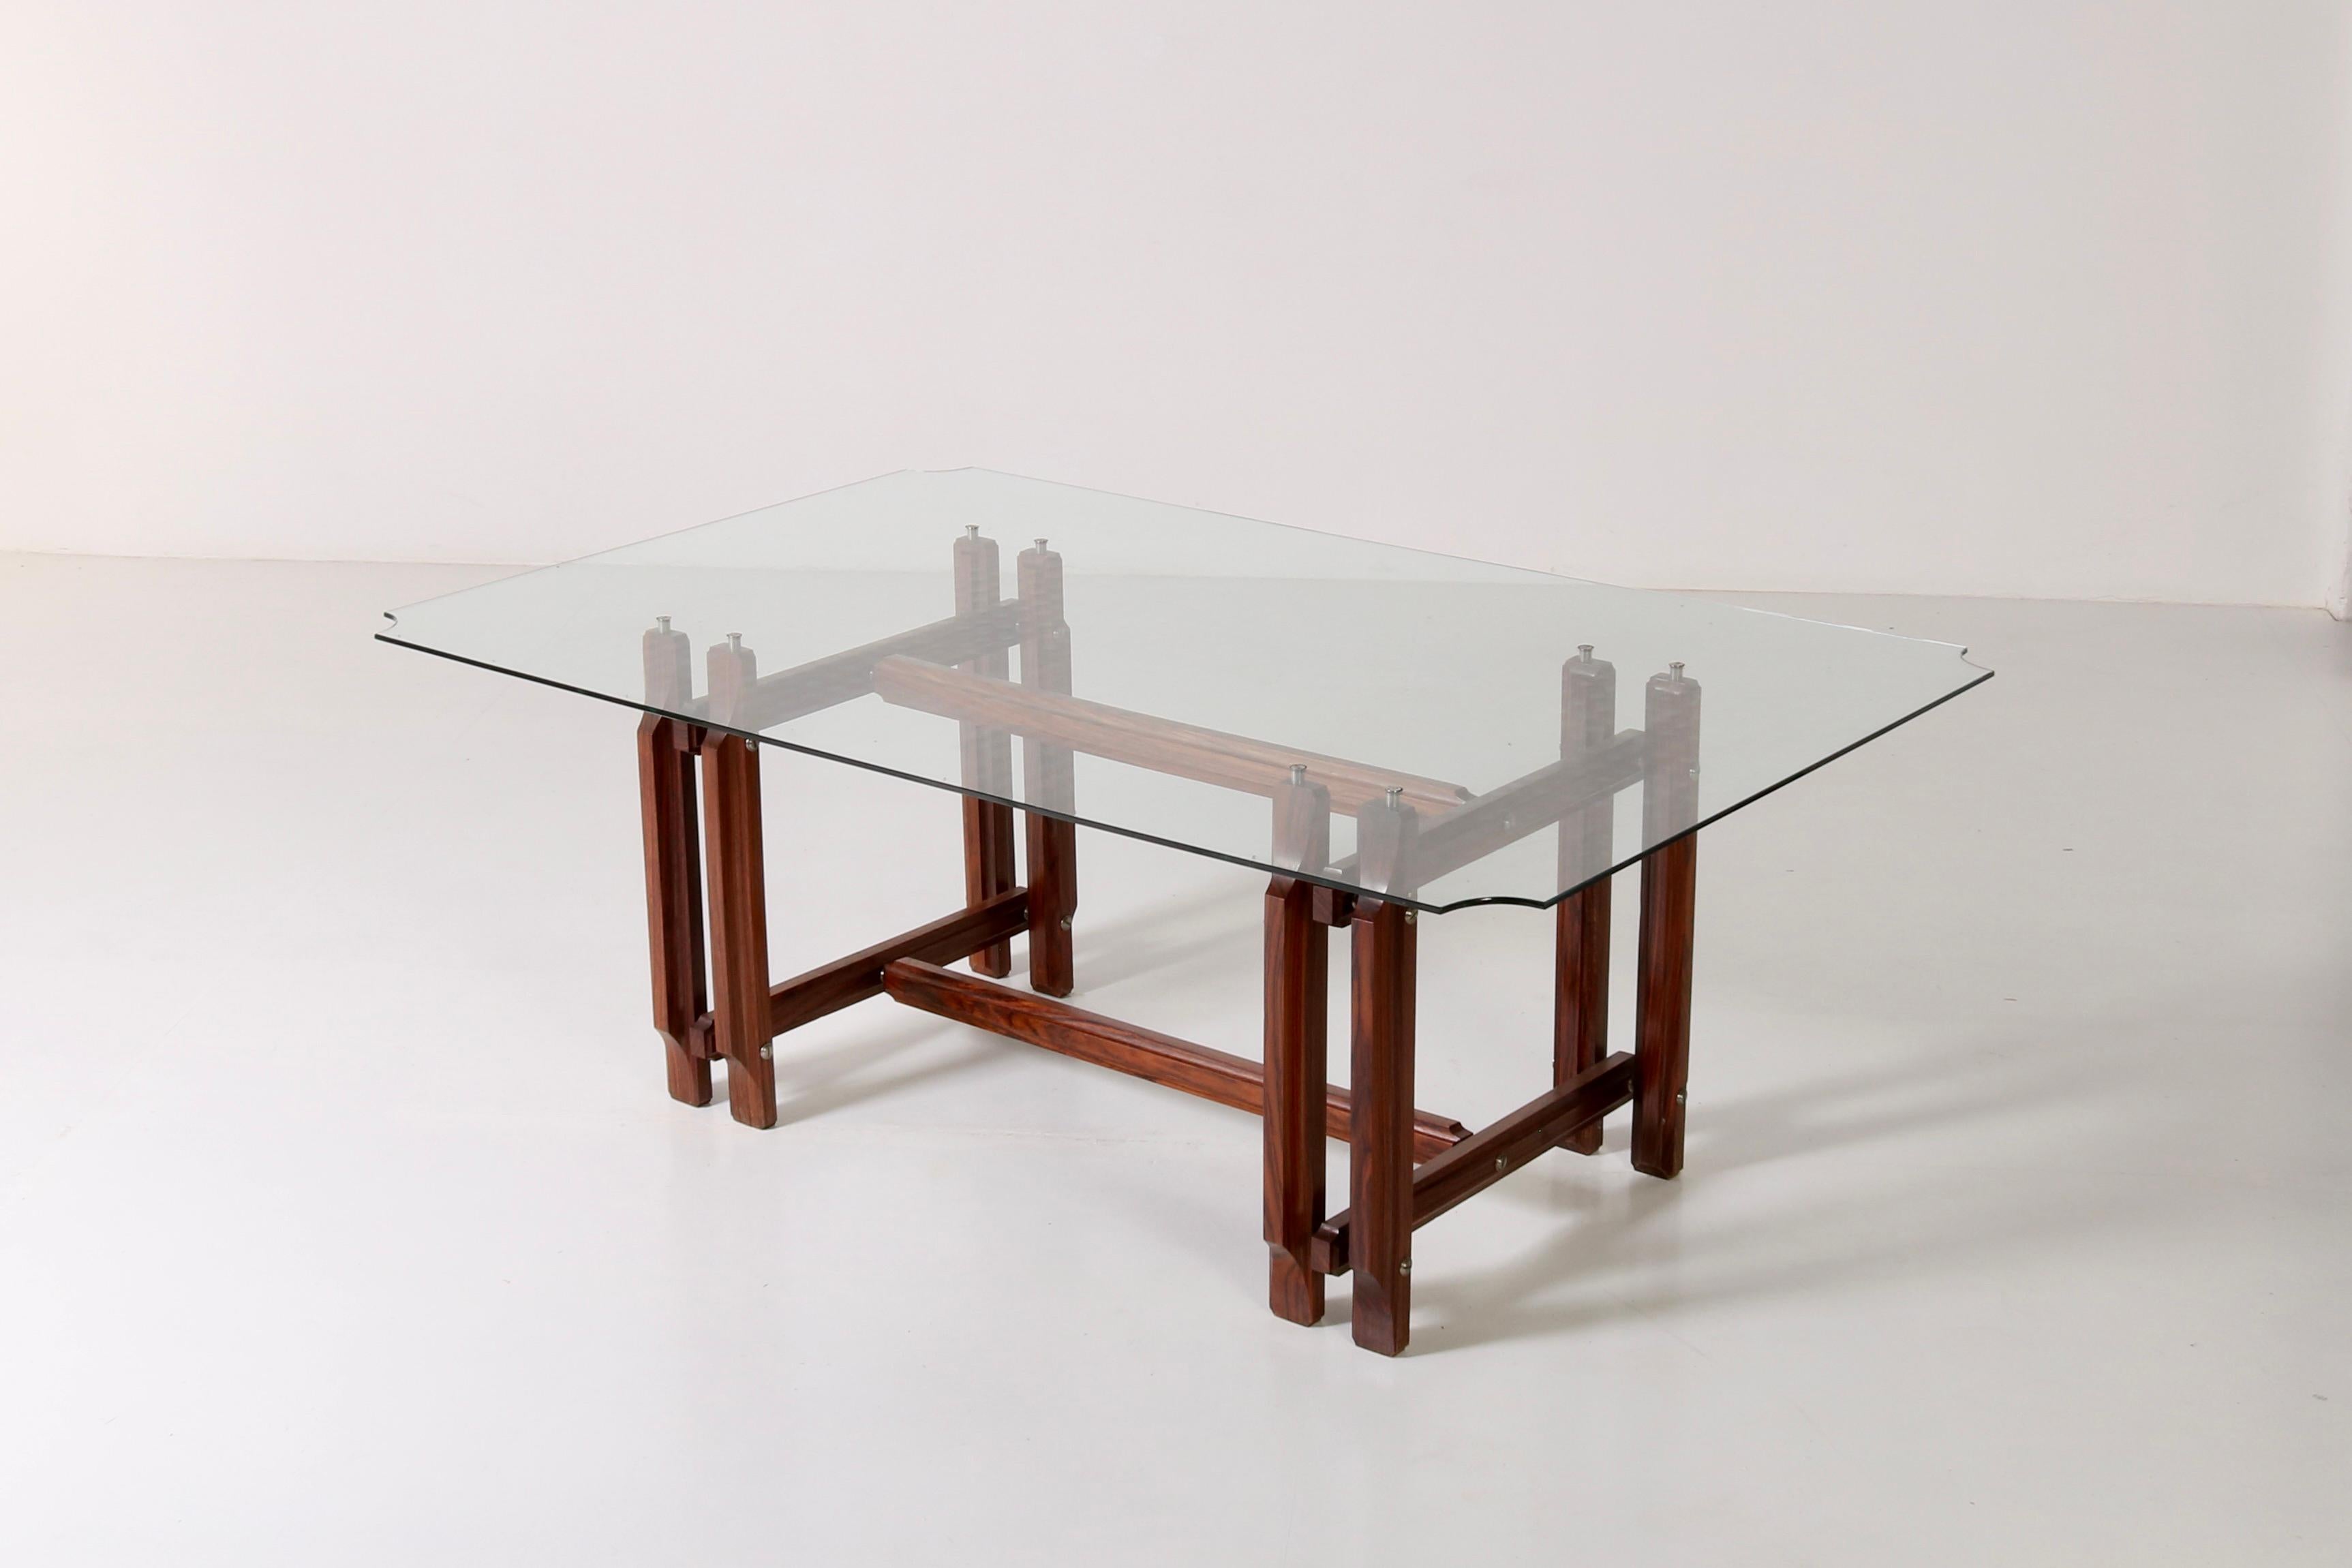 Dieser von Vittorio Dassi entworfene Tisch verbindet nahtlos die für das italienische Design der 1960er Jahre typische sorgfältige Handwerkskunst und ästhetische Forschung. Seine schlichte, minimalistische Silhouette aus Holz, die durch Details aus